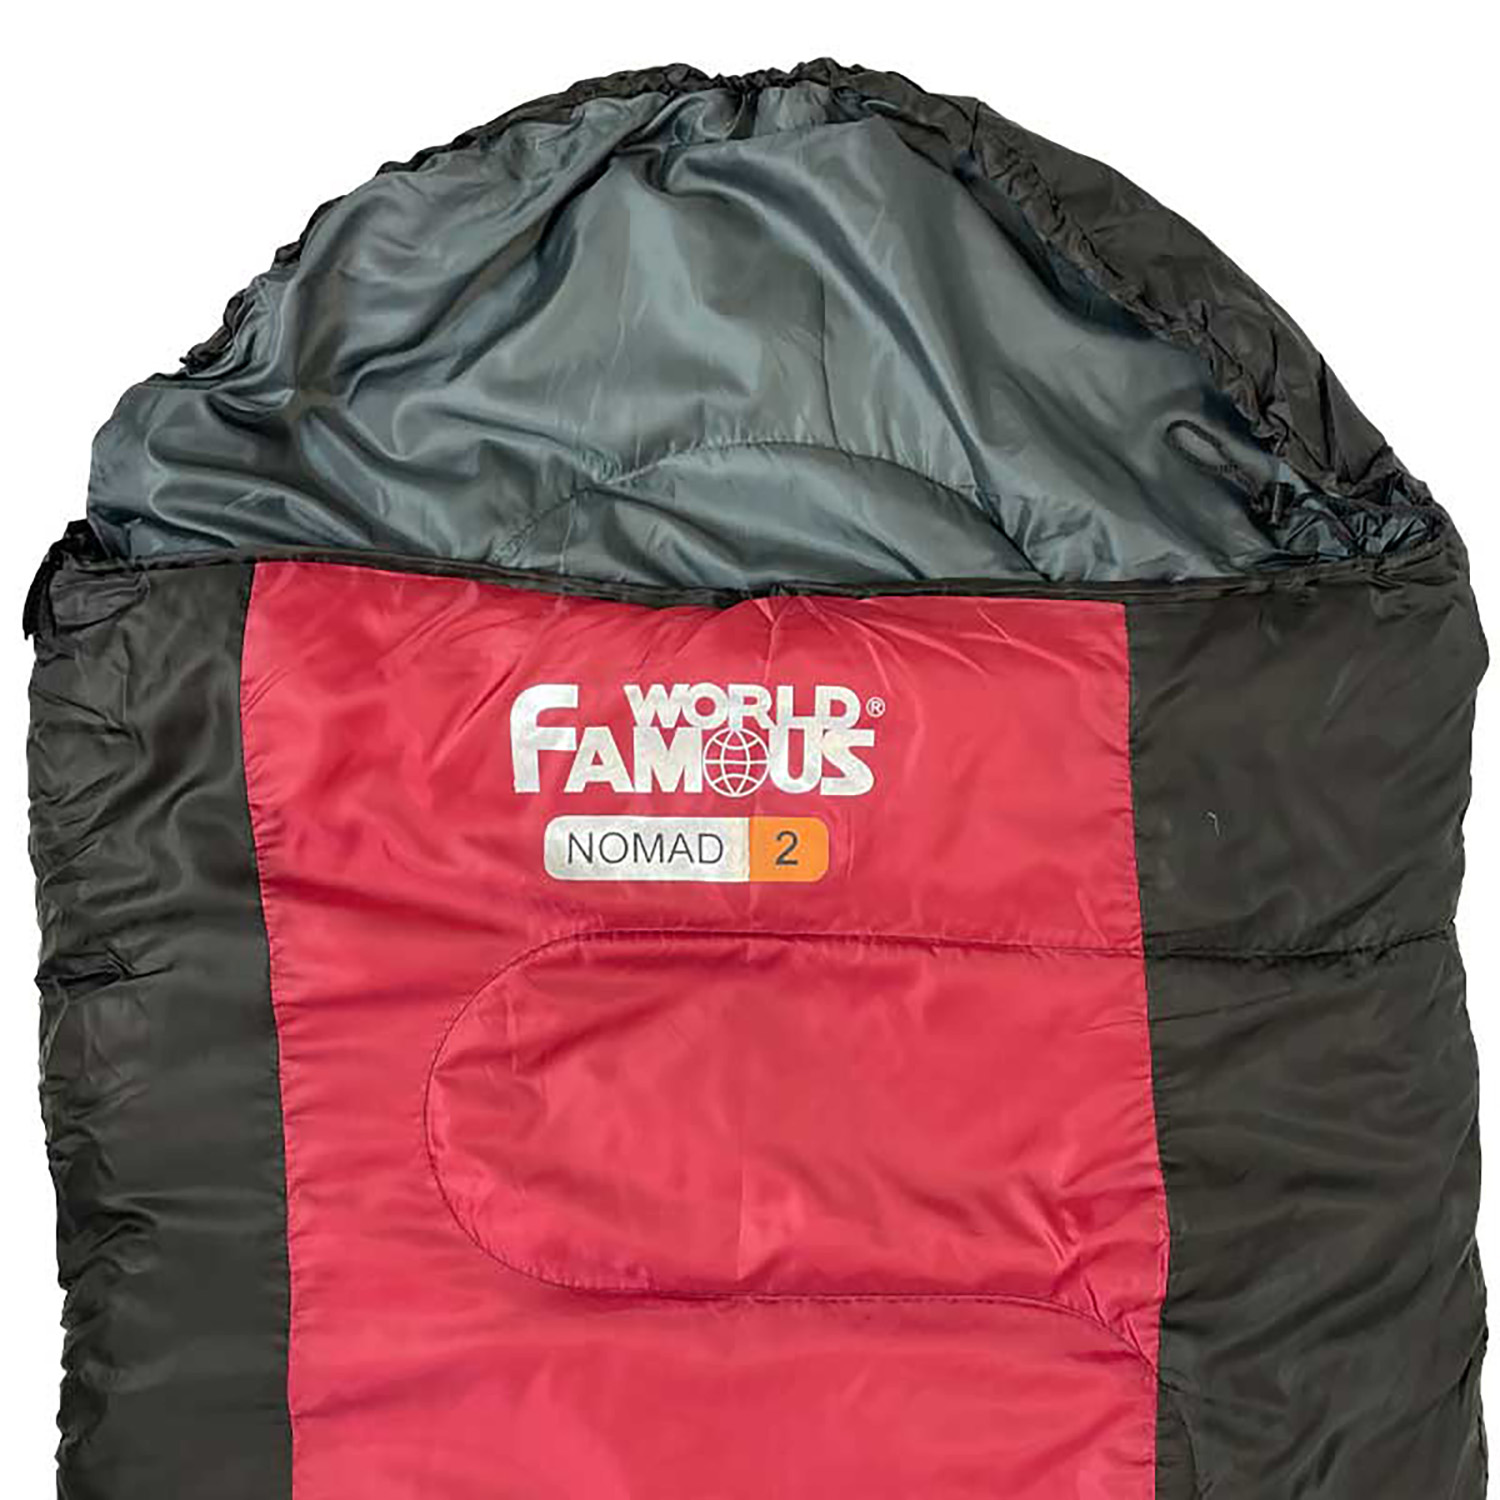 World Famous - Nomad 2 sleeping bag (10 to 0C)